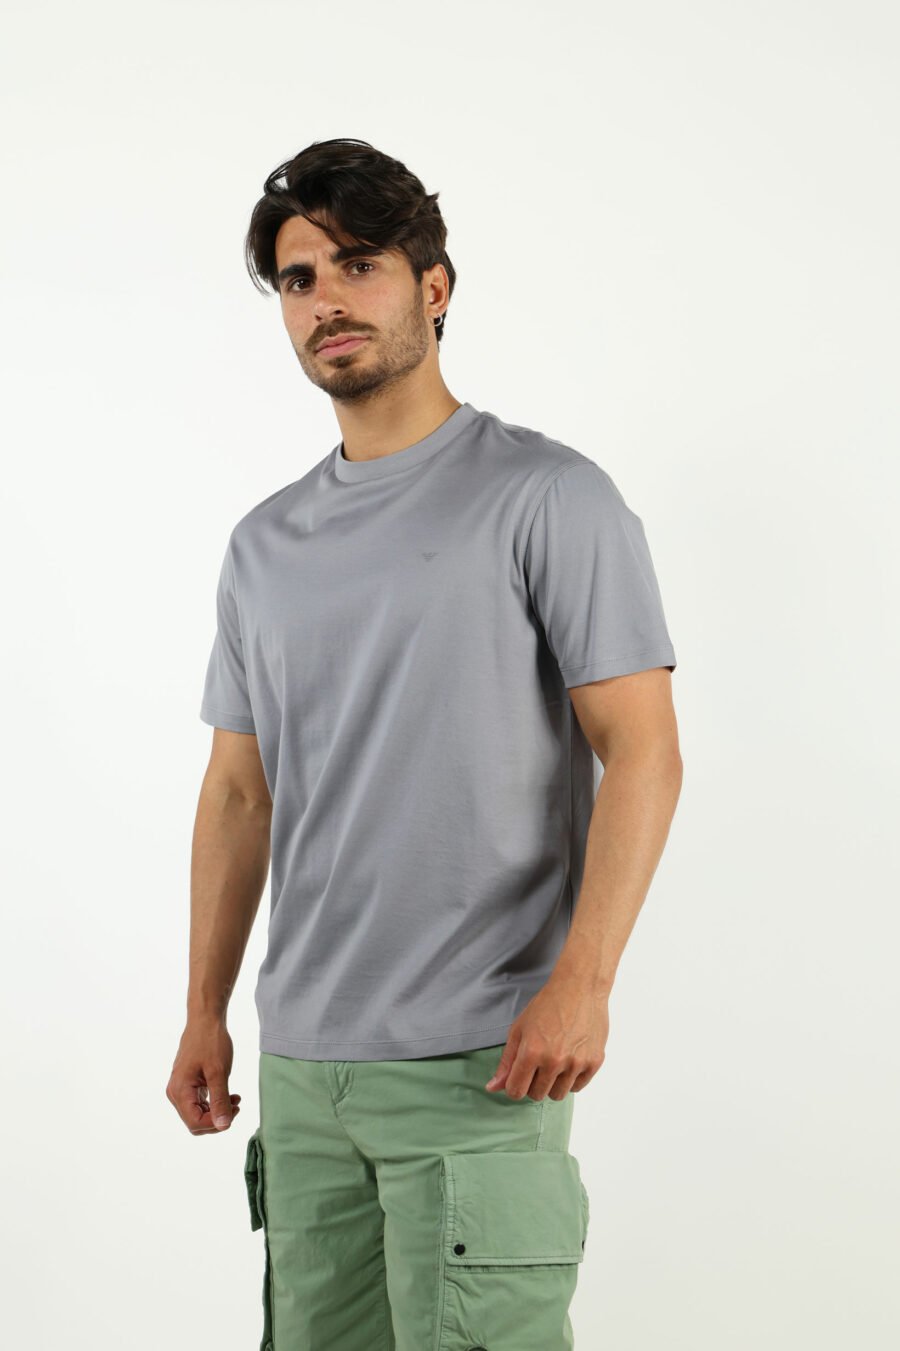 Camiseta gris con minilogo águila - number13513